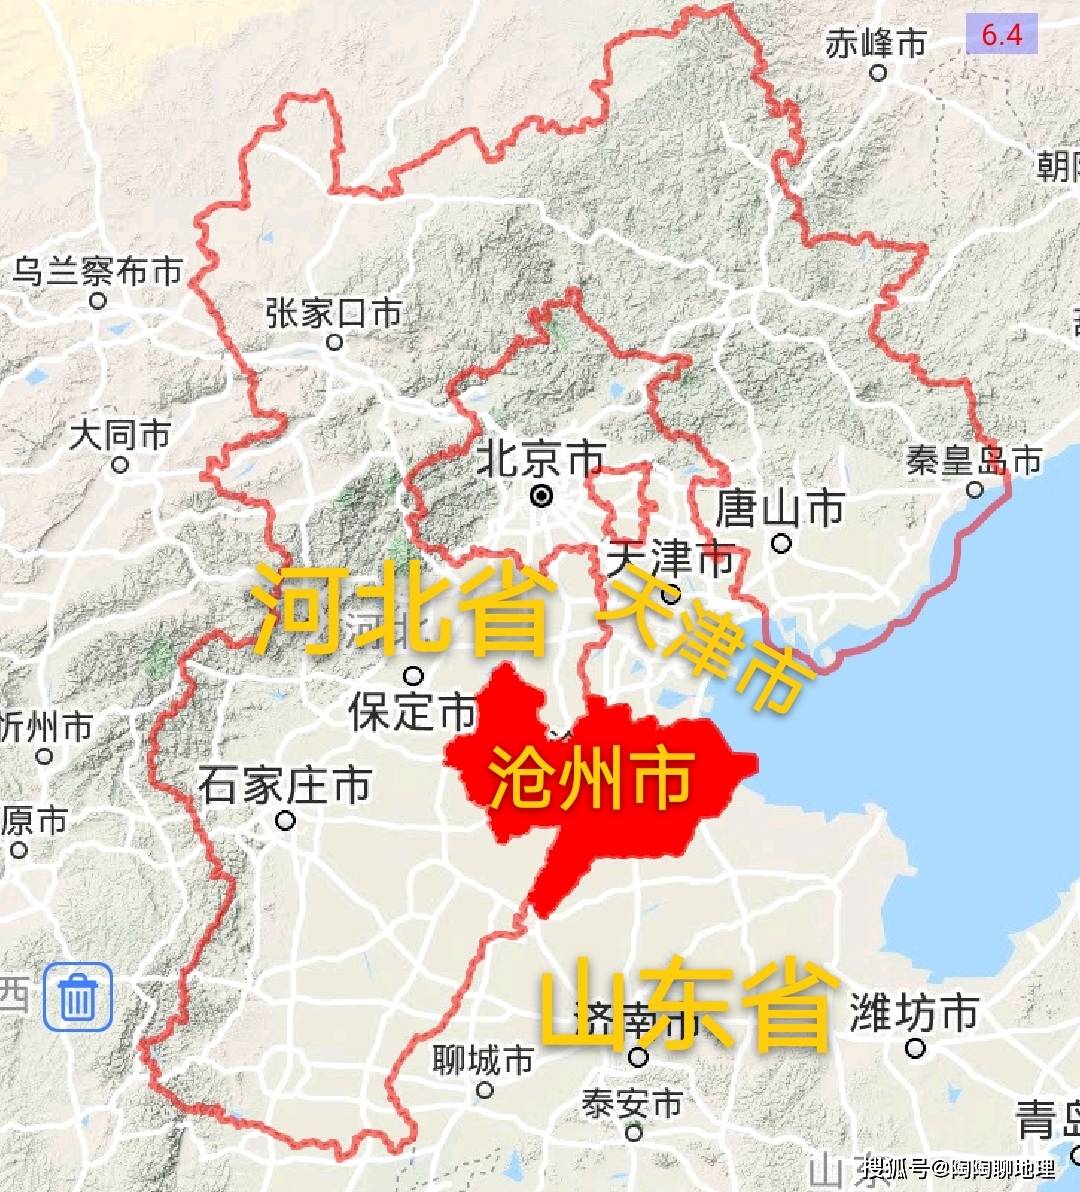 沧州市地理位置图沧州市处于华北平原东部,境内地势平坦开阔,一马平川